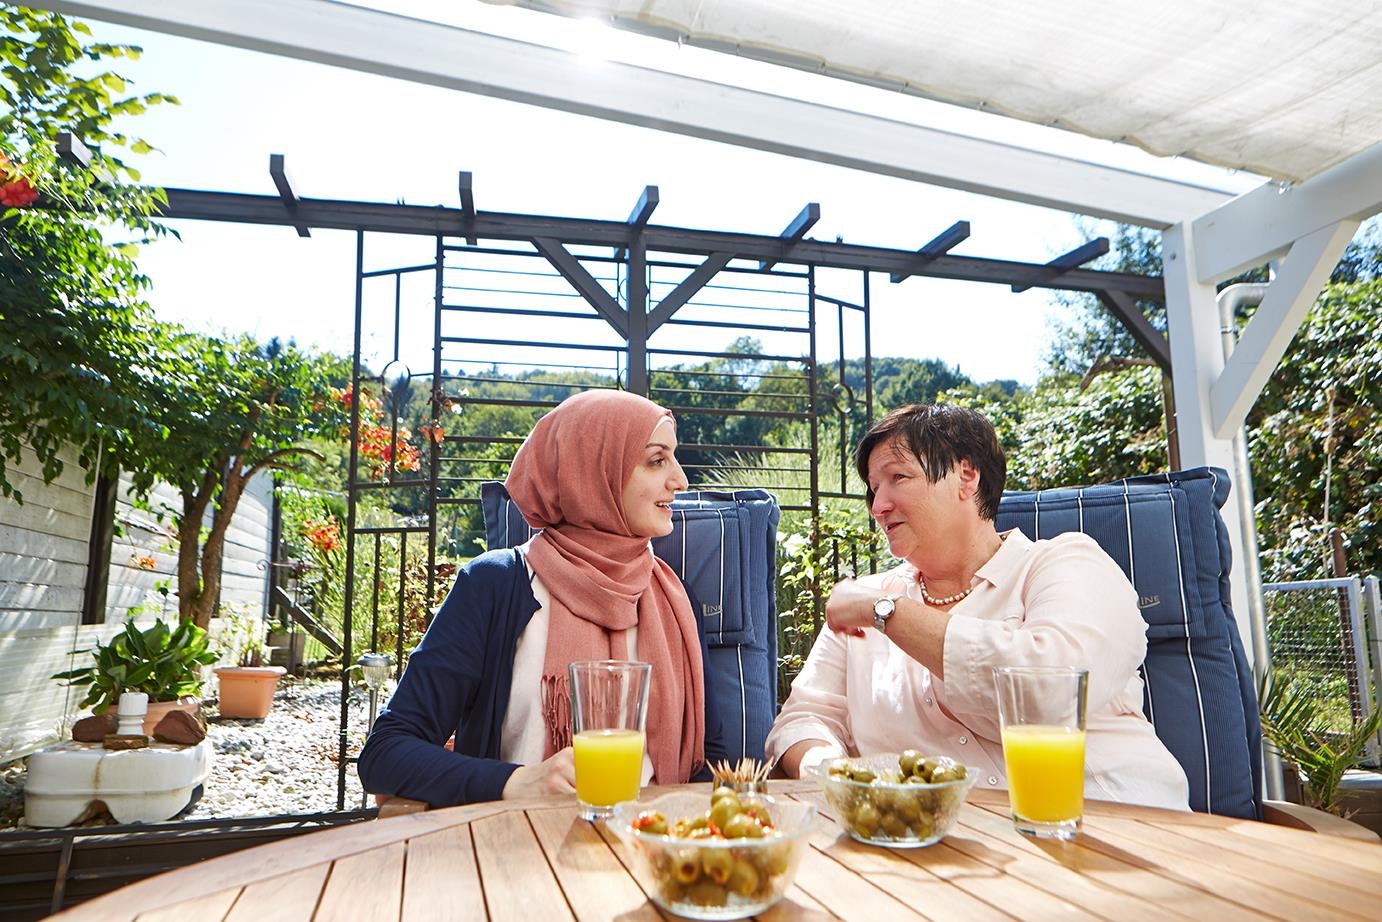 Zwei Frauen sitzen am Tisch und unterhalten sich, eine trägt ein Kopftuch.